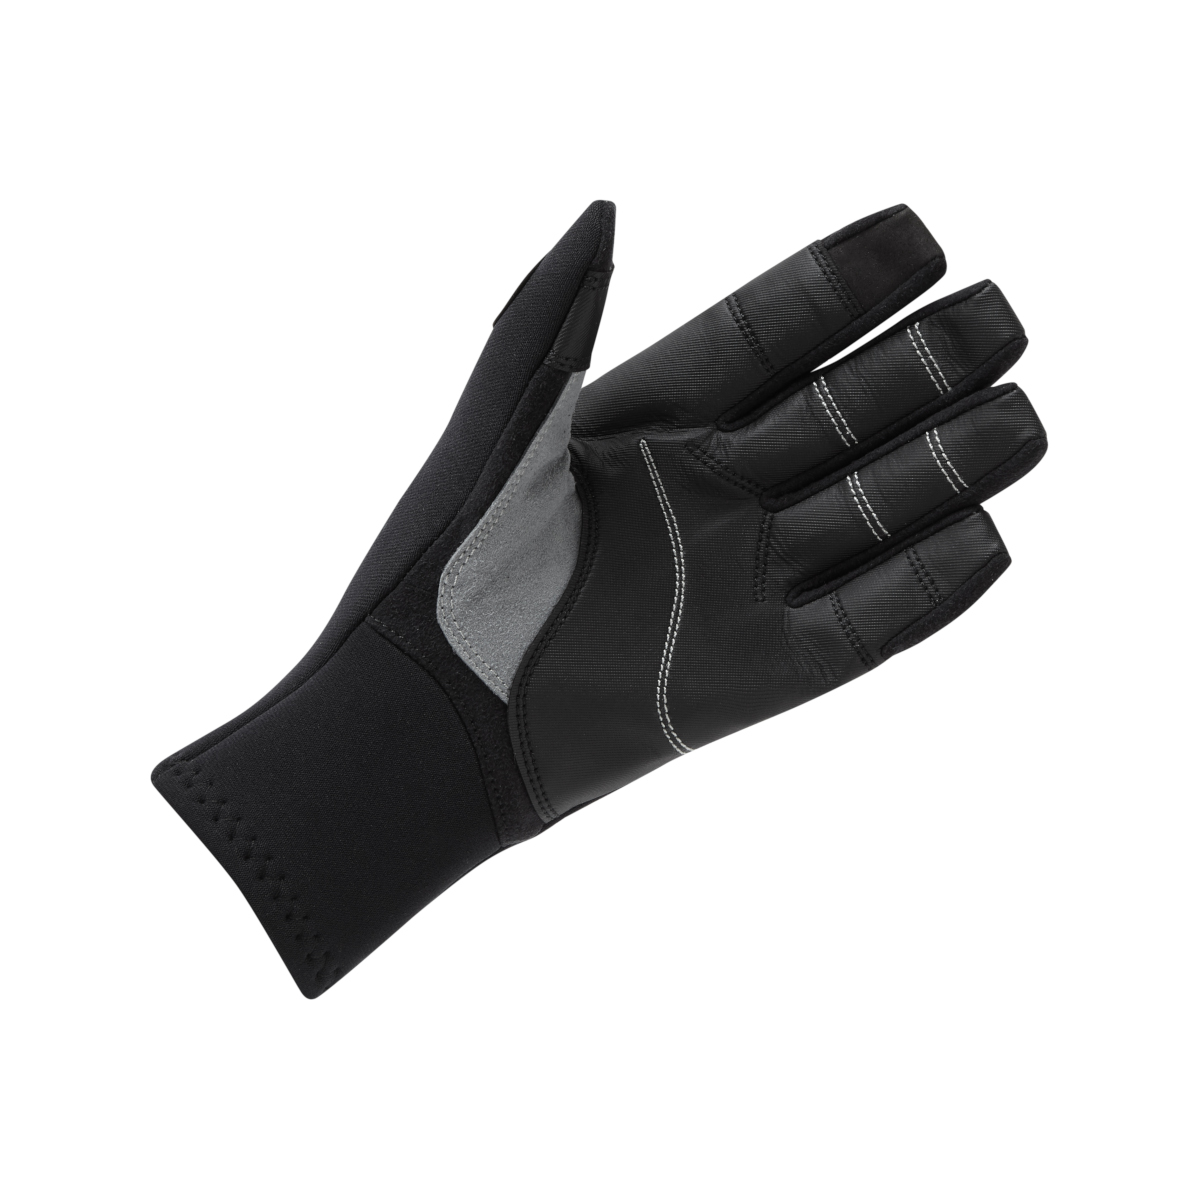 Gill gants de voile à doigts longs, 3 saisons - noir, taille L